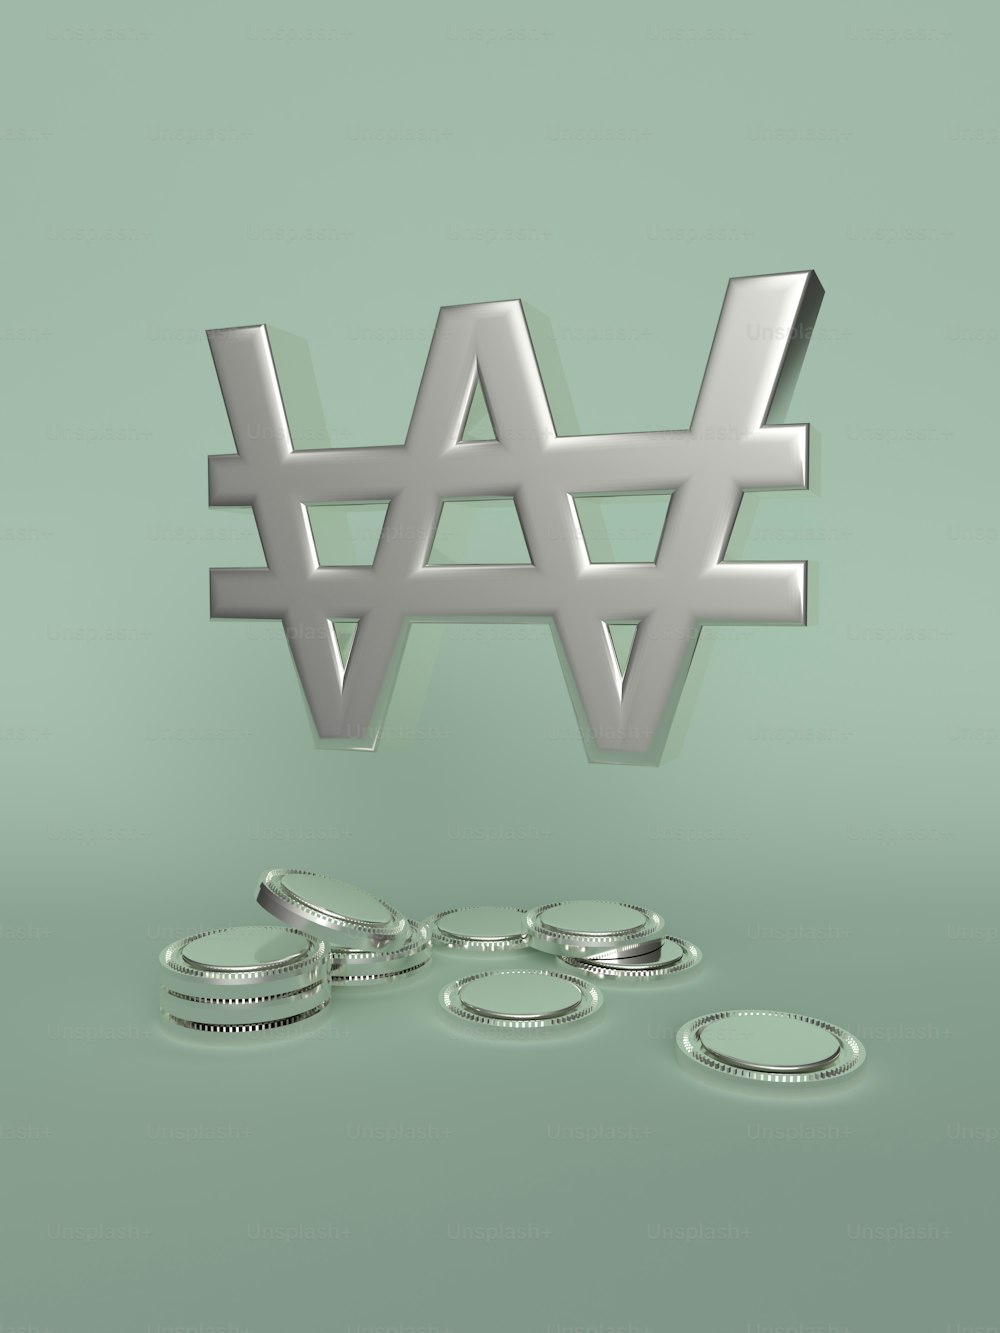 Un rendering 3D della parola W e di alcune monete